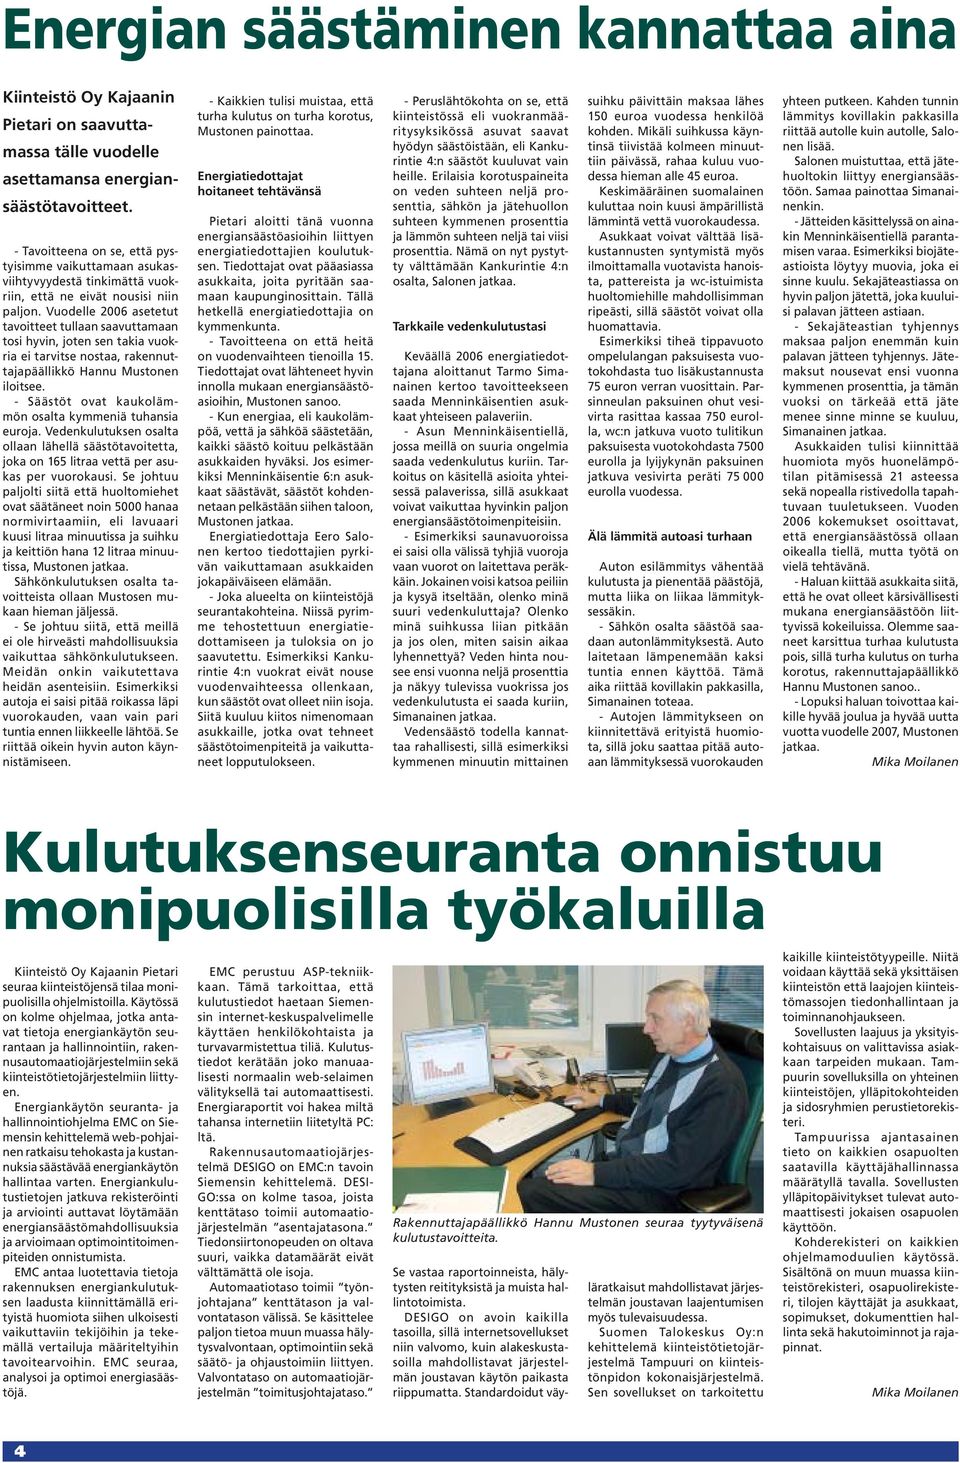 Vuodelle 2006 asetetut tavoitteet tullaan saavuttamaan tosi hyvin, joten sen takia vuokria ei tarvitse nostaa, rakennuttajapäällikkö Hannu Mustonen iloitsee.